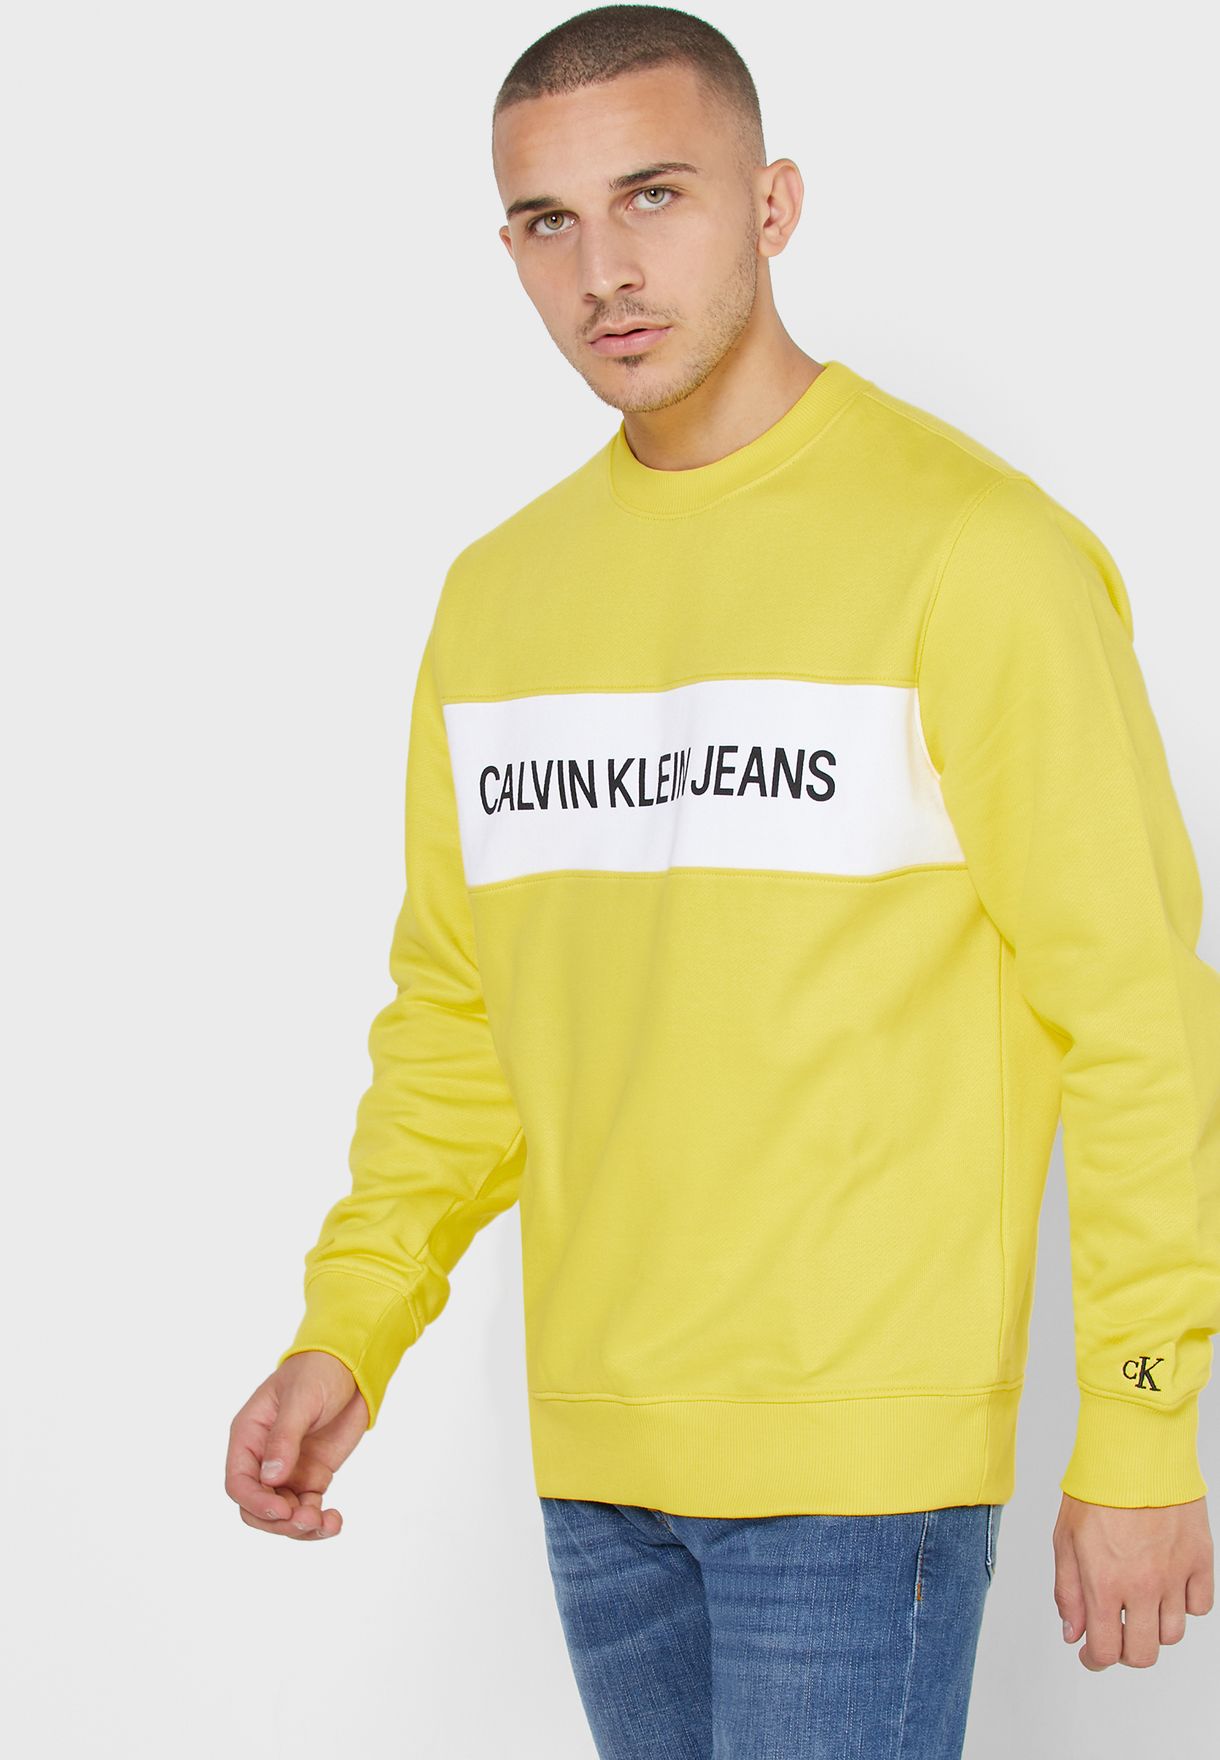 Buy Calvin Klein Jeans yellow Contrast Panel Sweatshirt for in MENA,